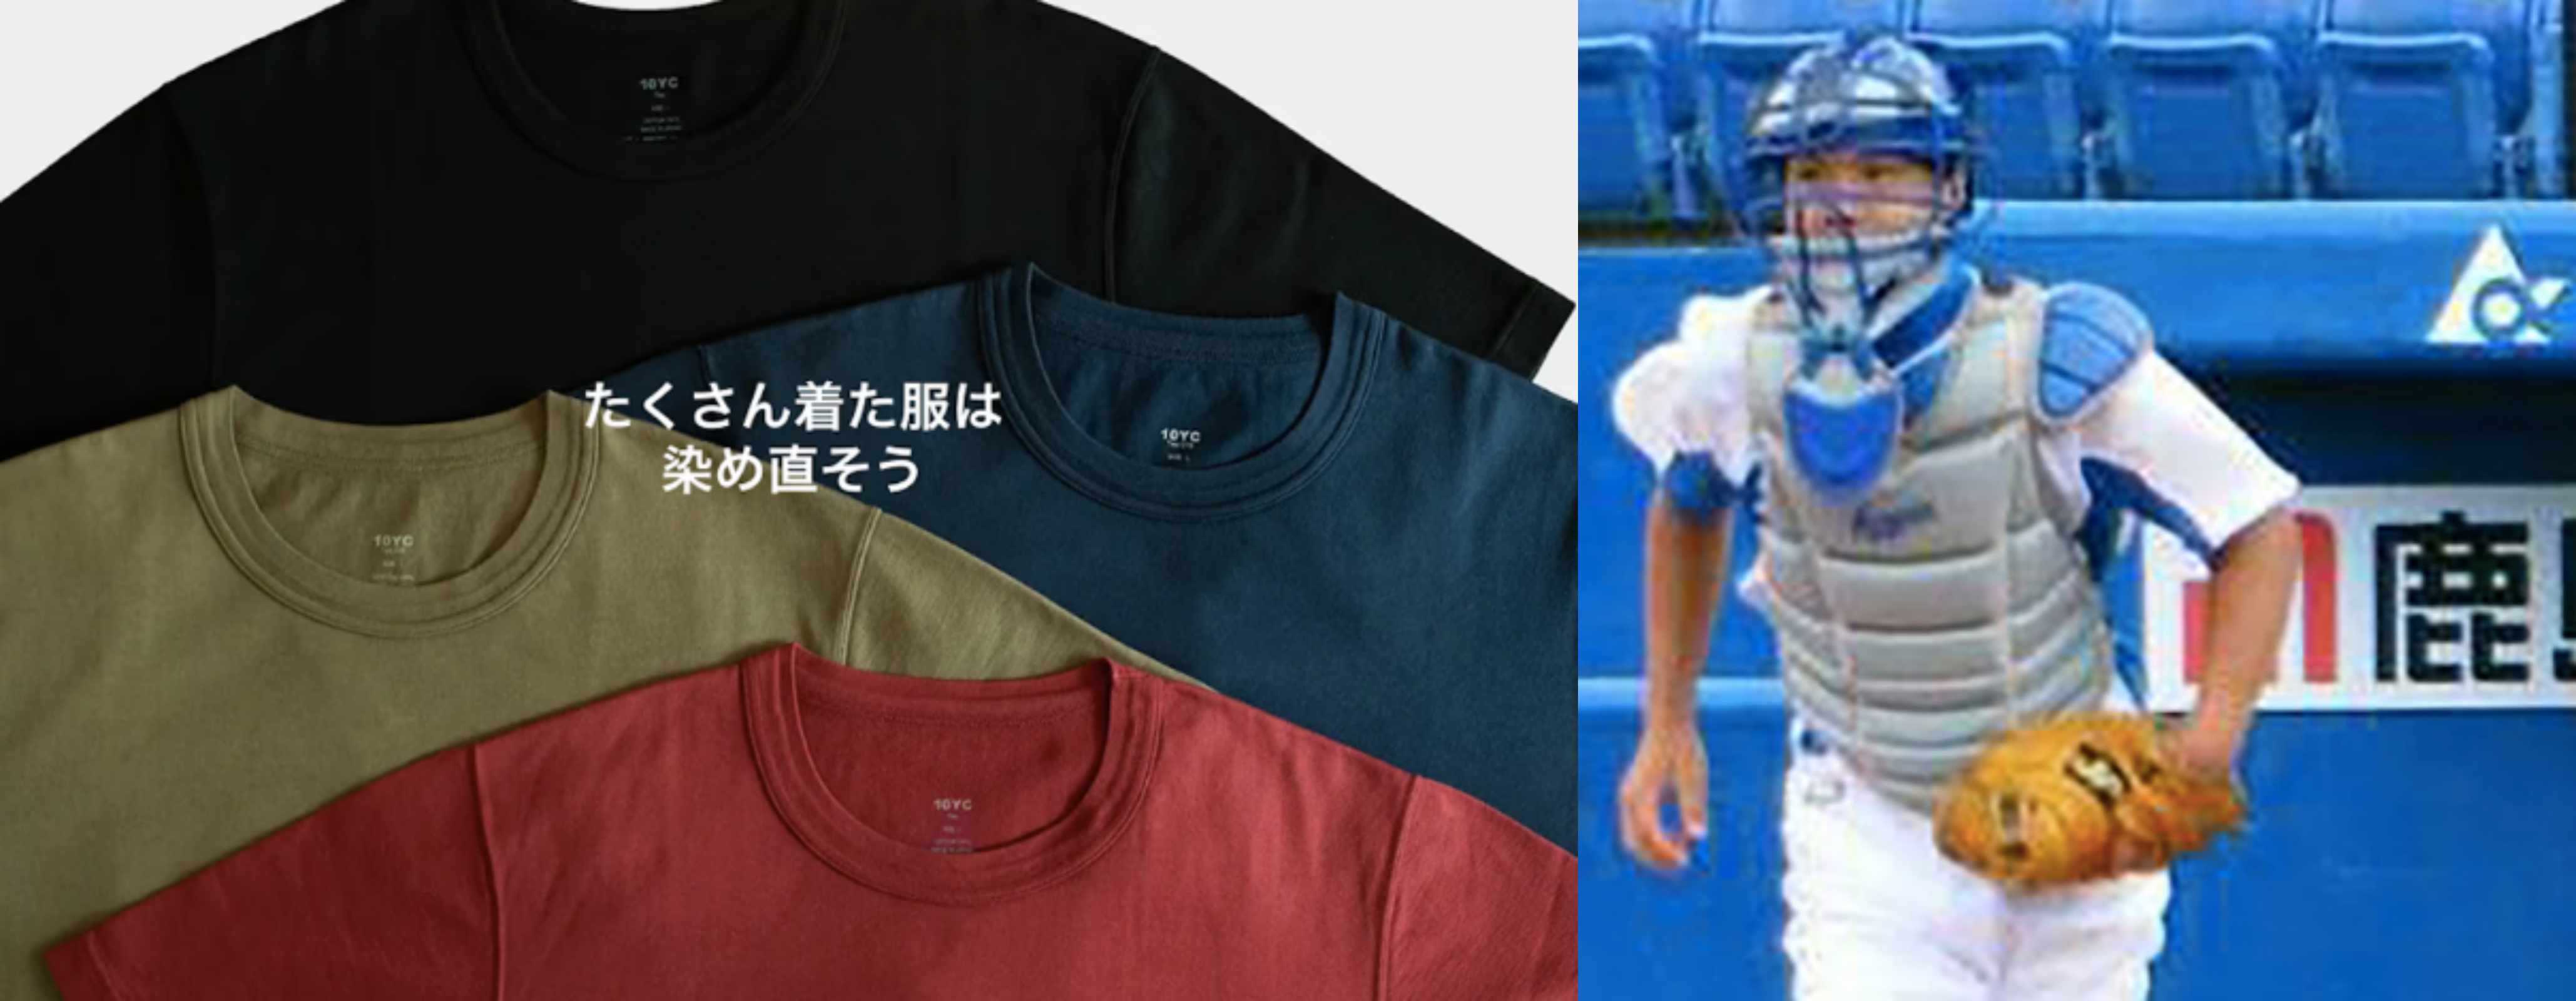 너무 낡아버린 티셔츠는 색을 바꿔볼 수 있는 기회의 타이밍이기도 해요(左). 그리고 시모타 씨는 고교 시절까지 야구 소년이었어요. 매일이 땀 흘리는 날이었을테니 티셔츠의 중요성 일찌감치 알고 있었겠죠.